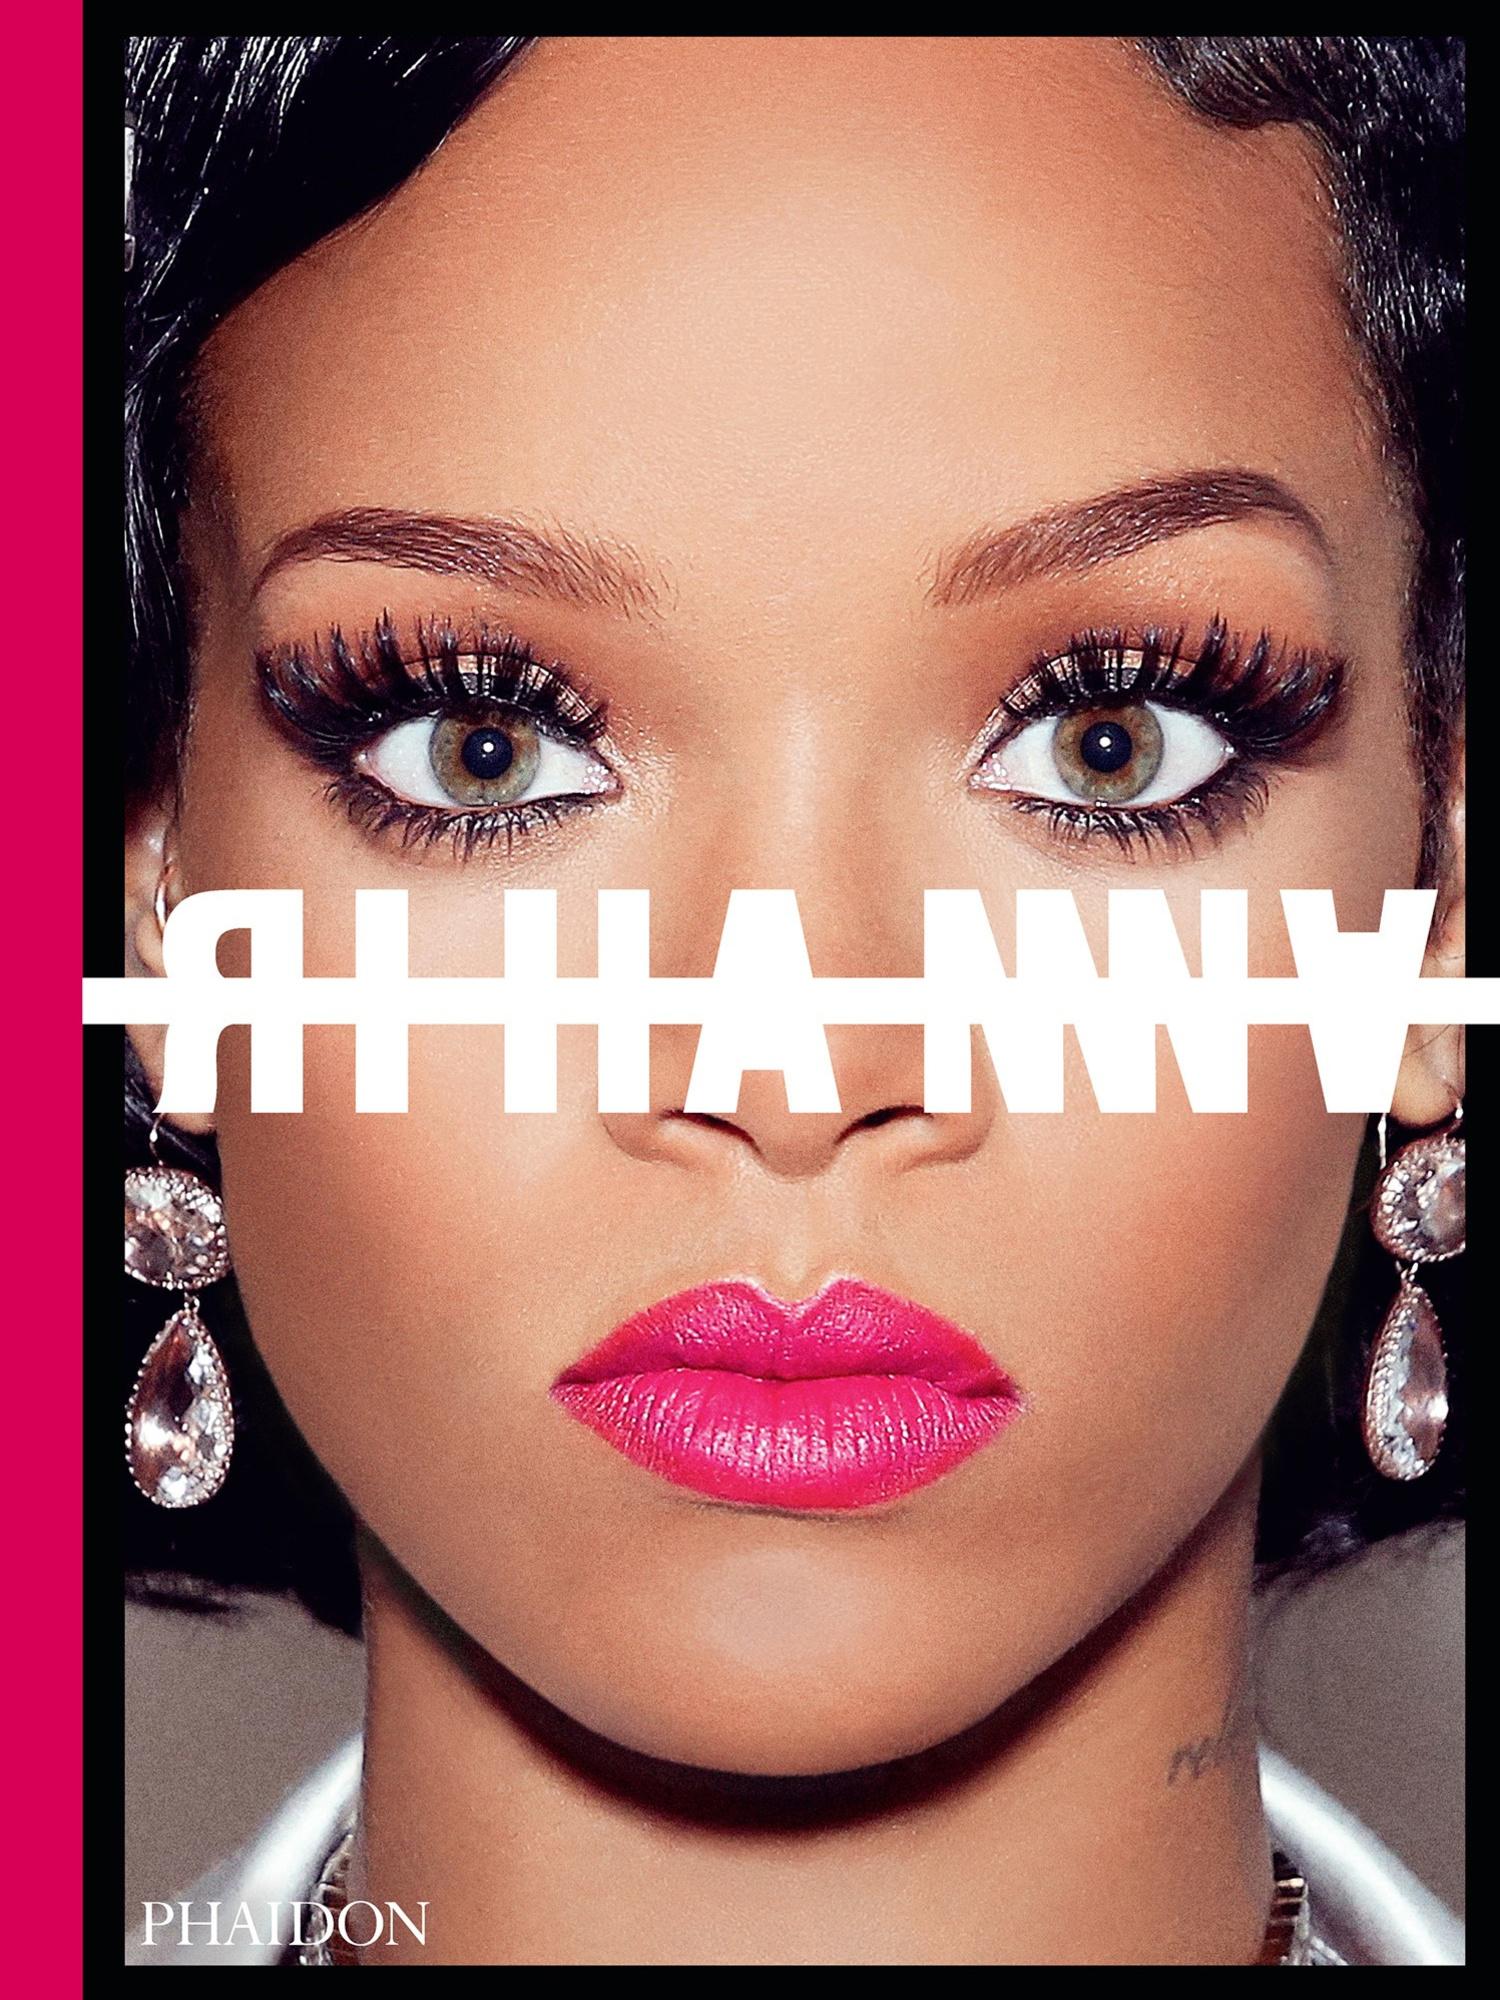 Rihanna sort une autobiographie visuelle